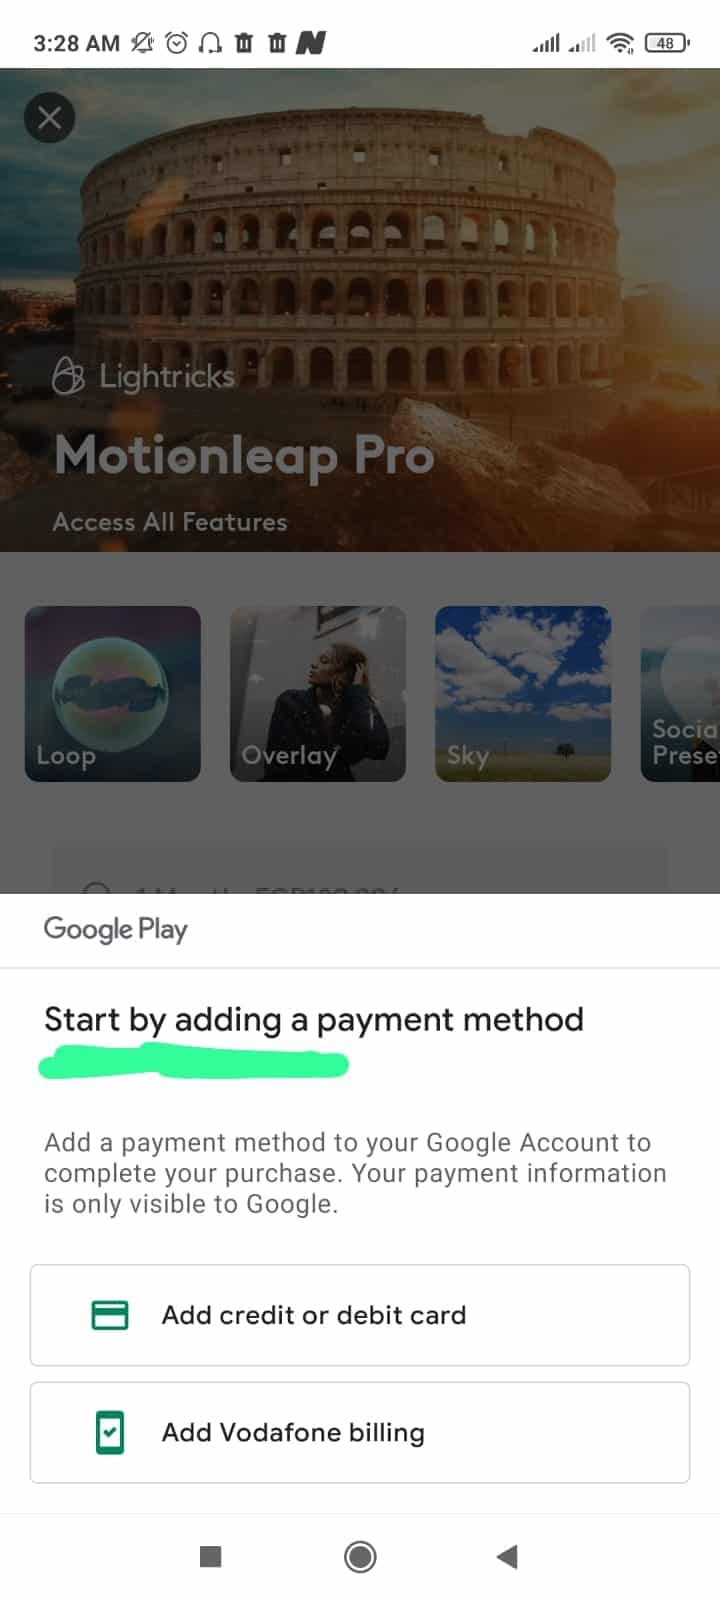 خطوات إنشاء حساب على motionleap